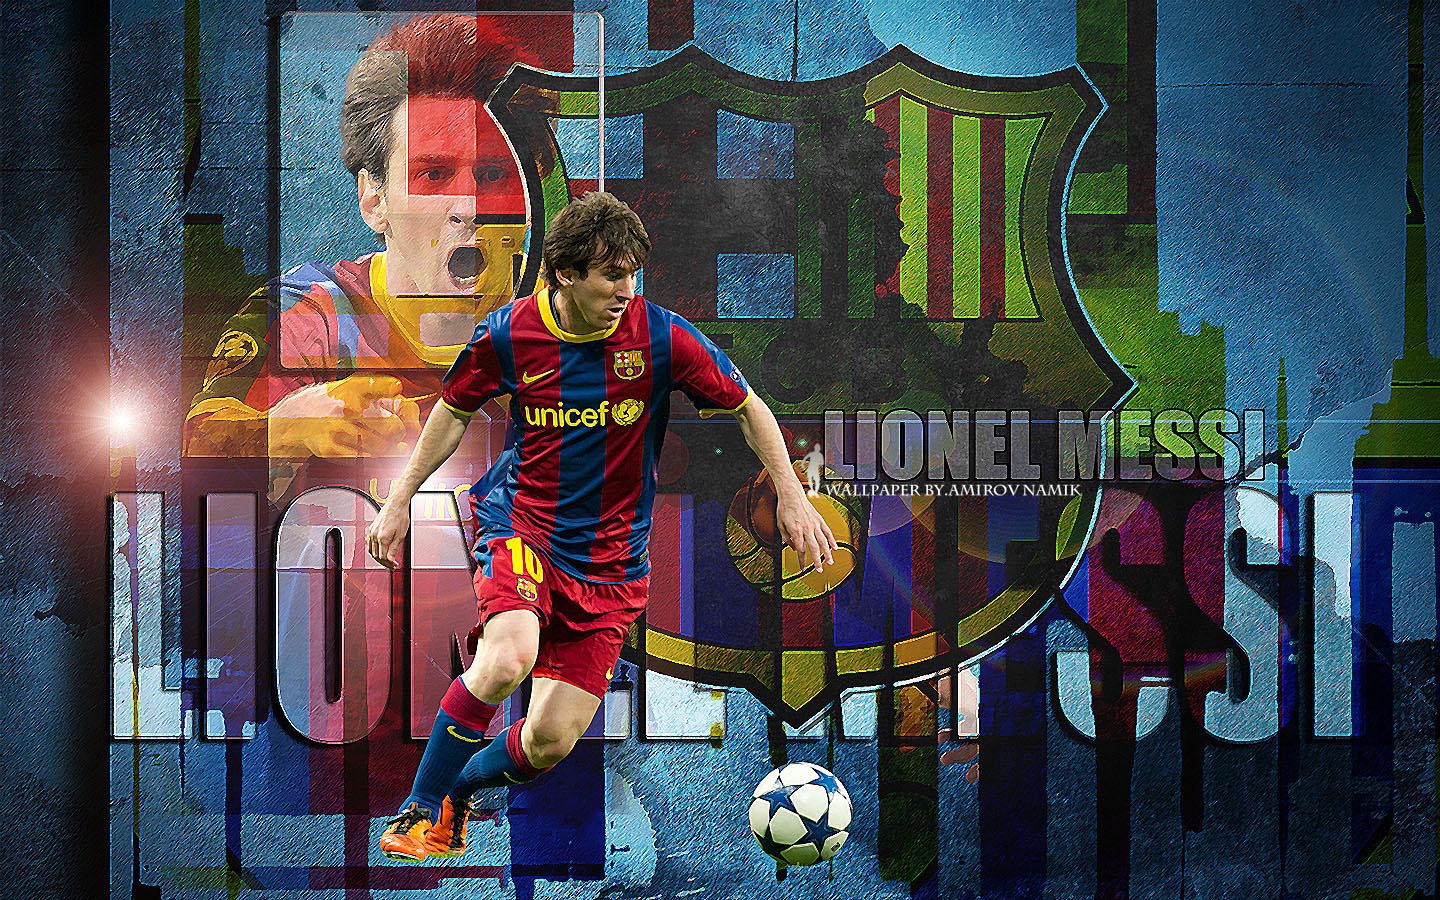 Messi: Hãy xem hình ảnh về cầu thủ bóng đá vĩ đại nhất mọi thời đại - Messi, để được ngắm nhìn vẻ đẹp và kỹ năng chơi bóng của anh ta.